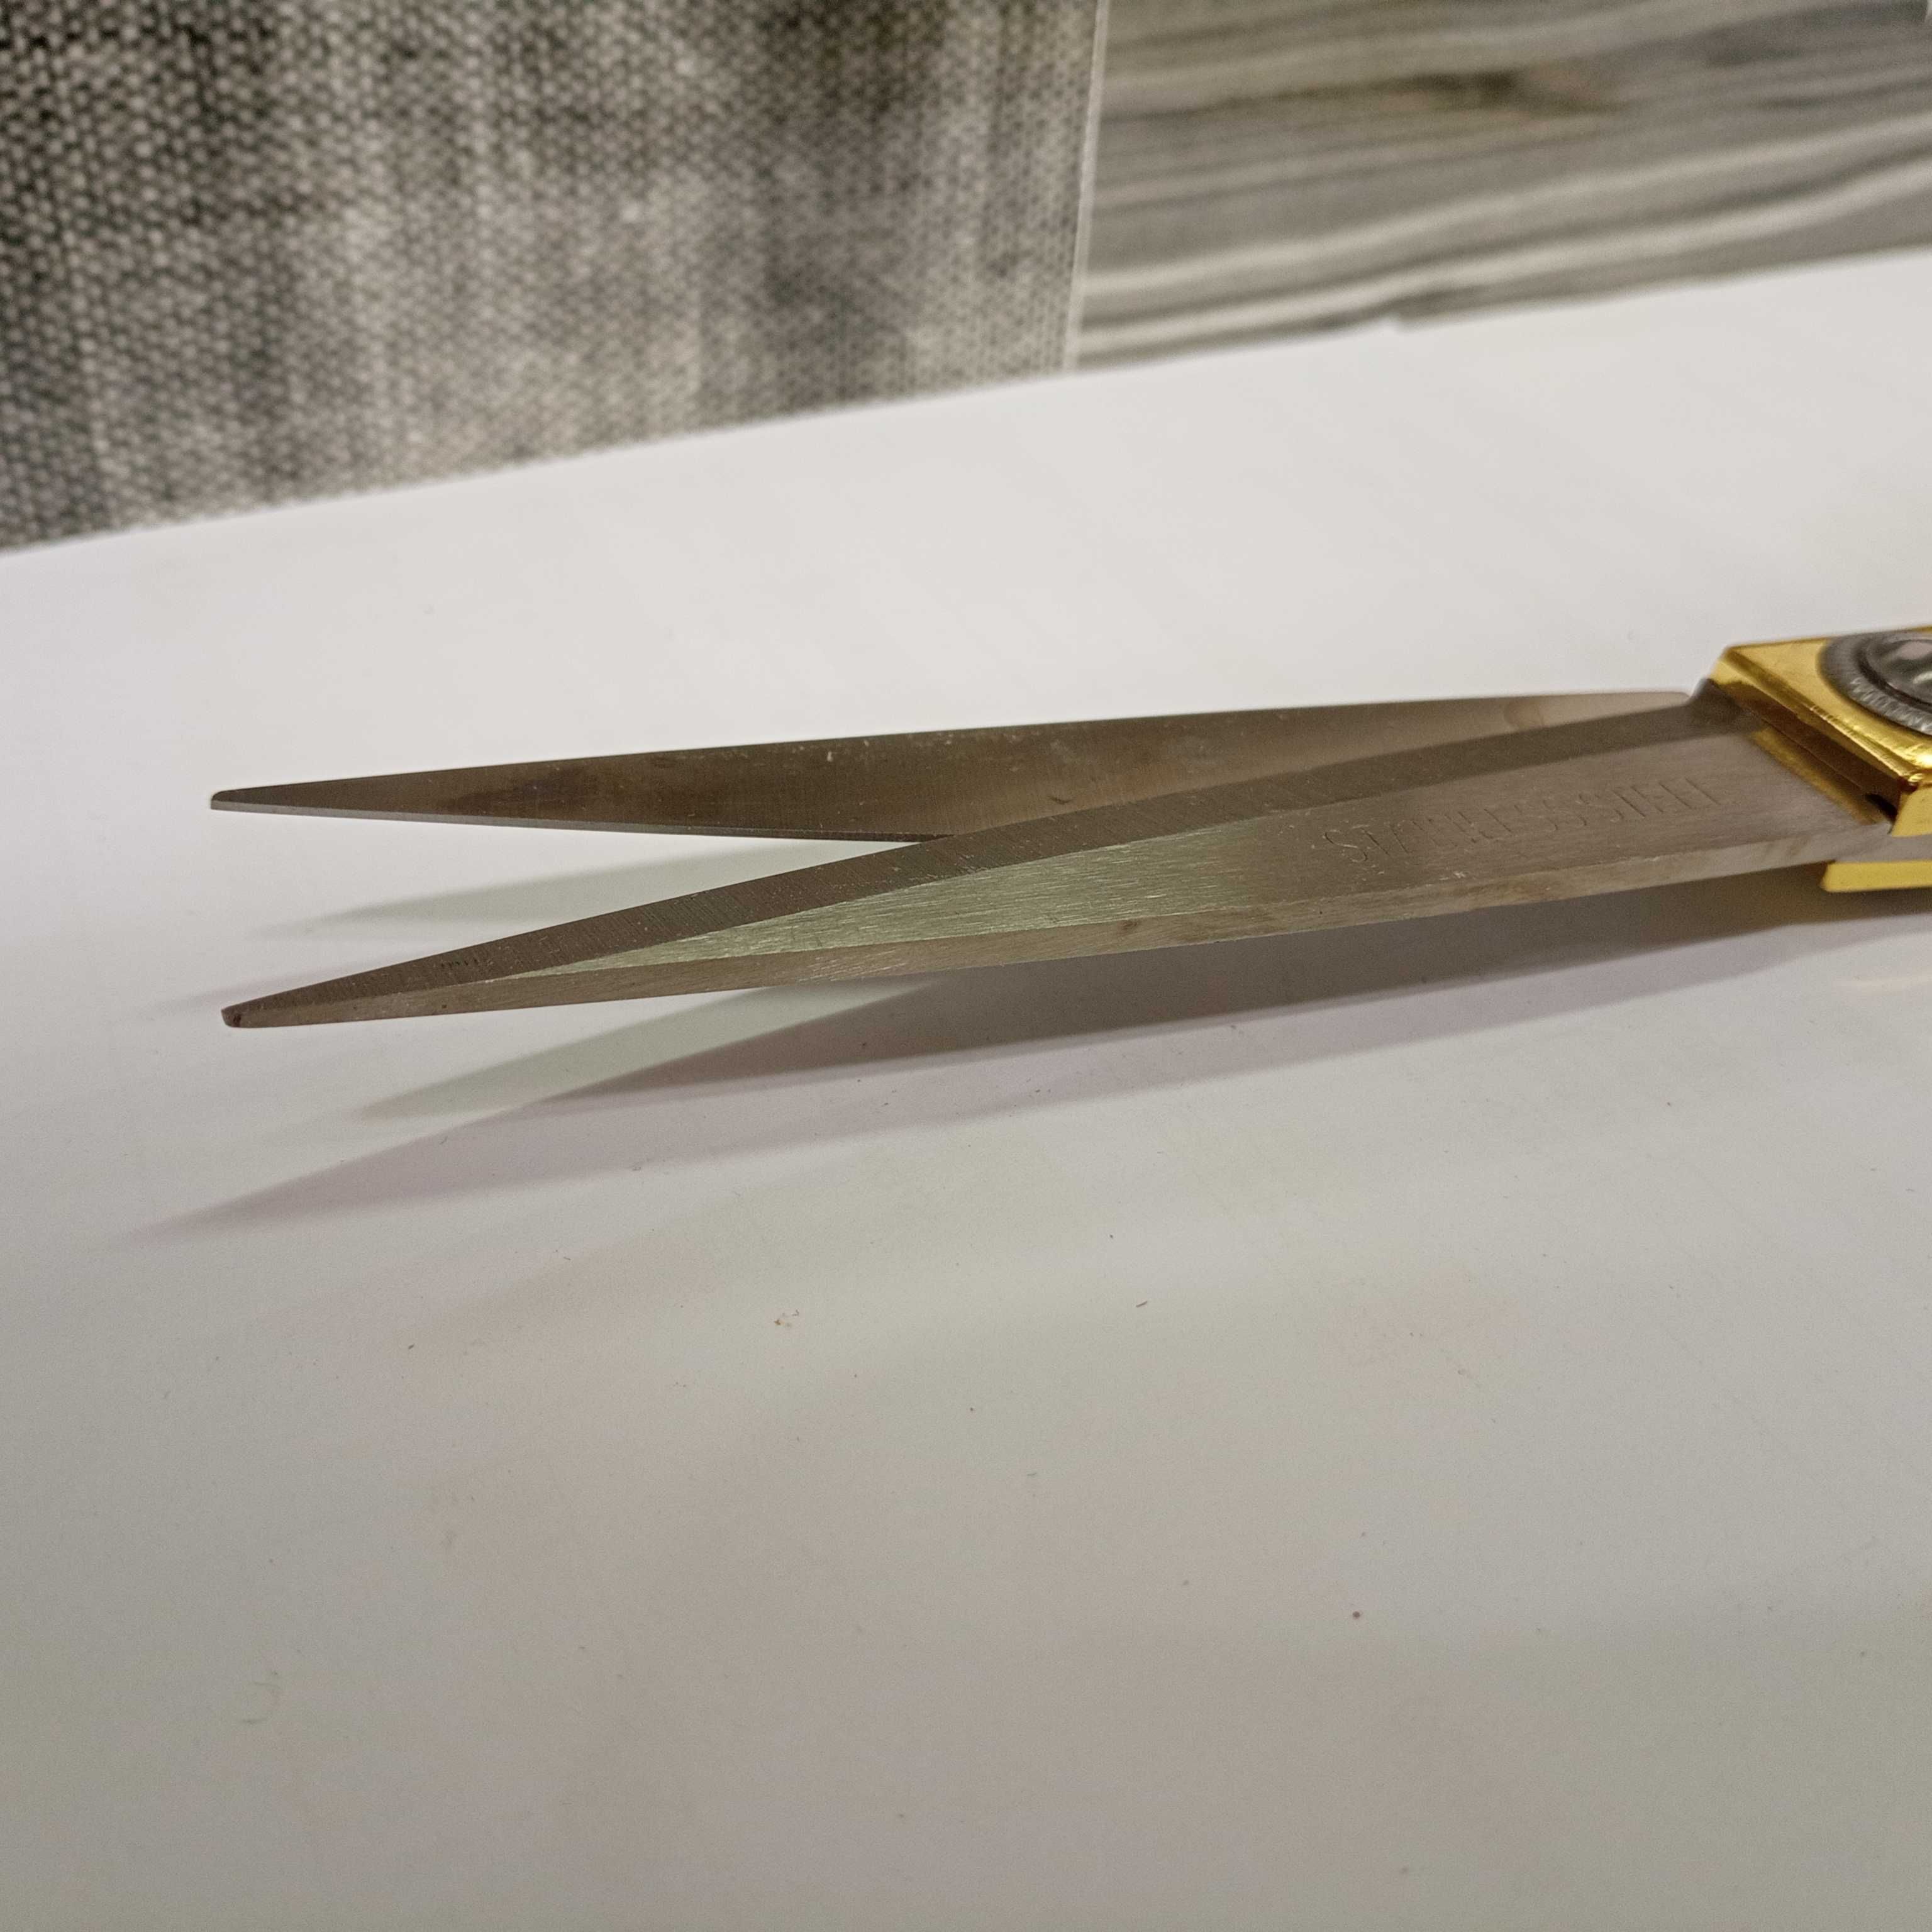 Nożyczki krawieckie złote średnie 24cm mocne do materiału przeróbek